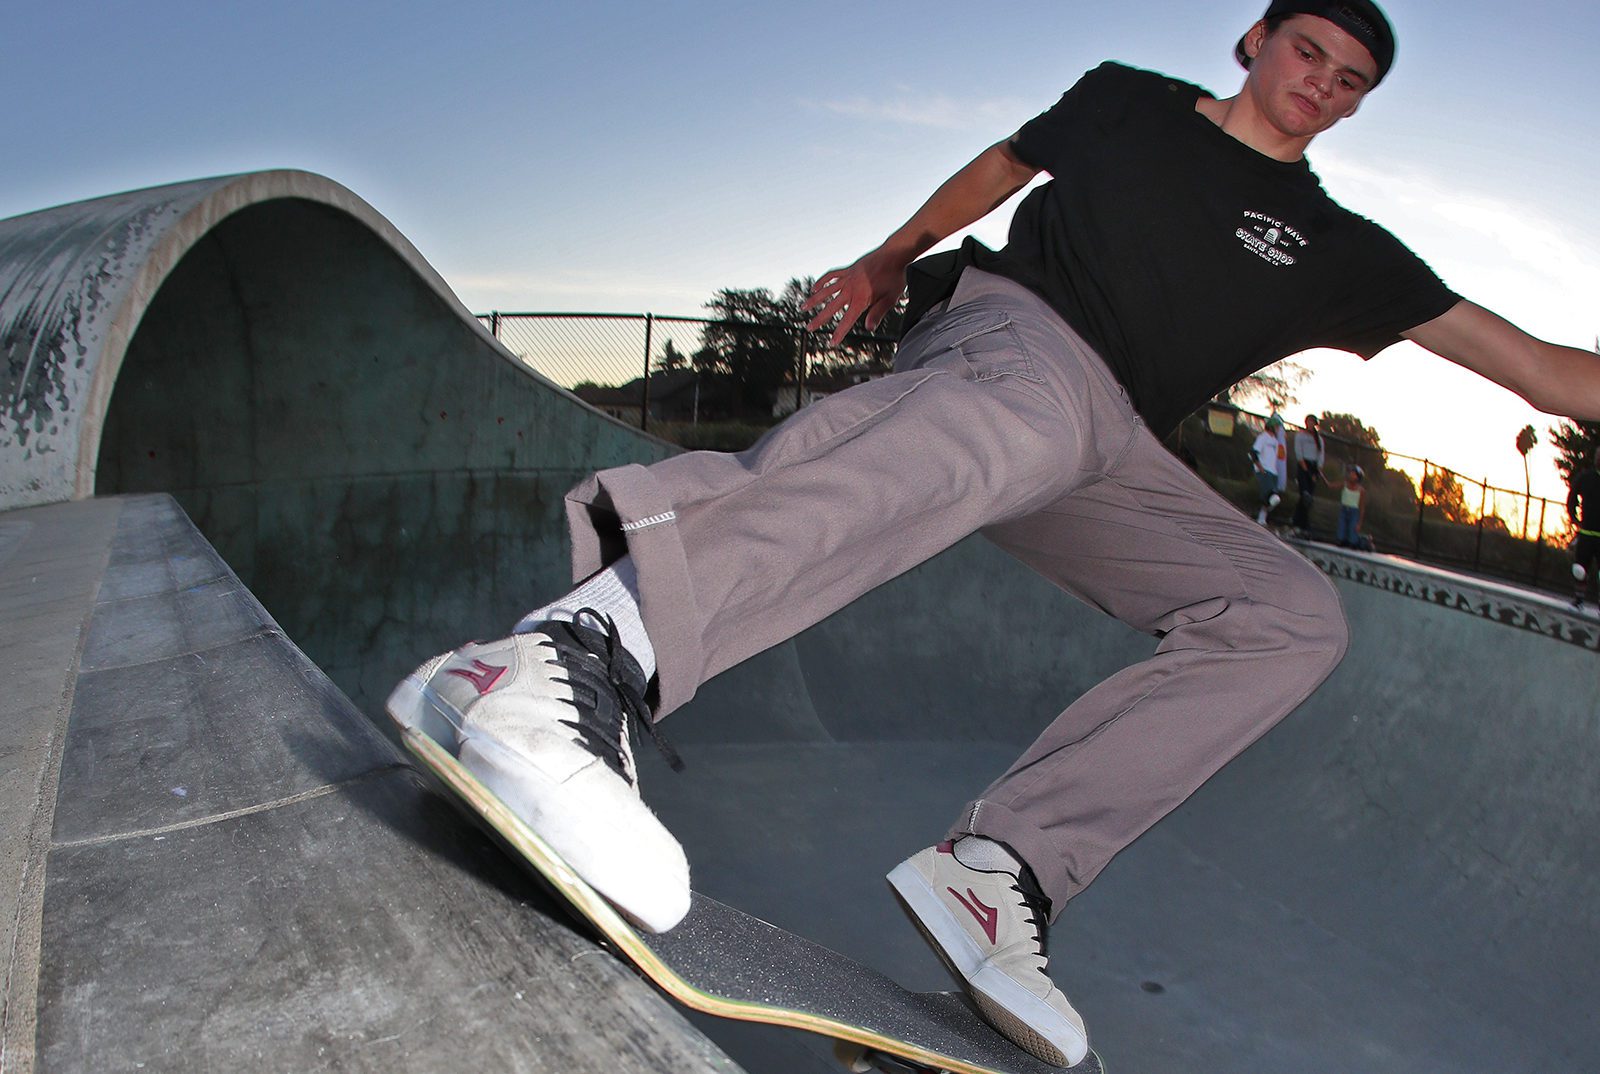 Skateboarder Nikki Rodger transitions to tailslide at Mike Fox Skate Park in Santa Cruz, CA